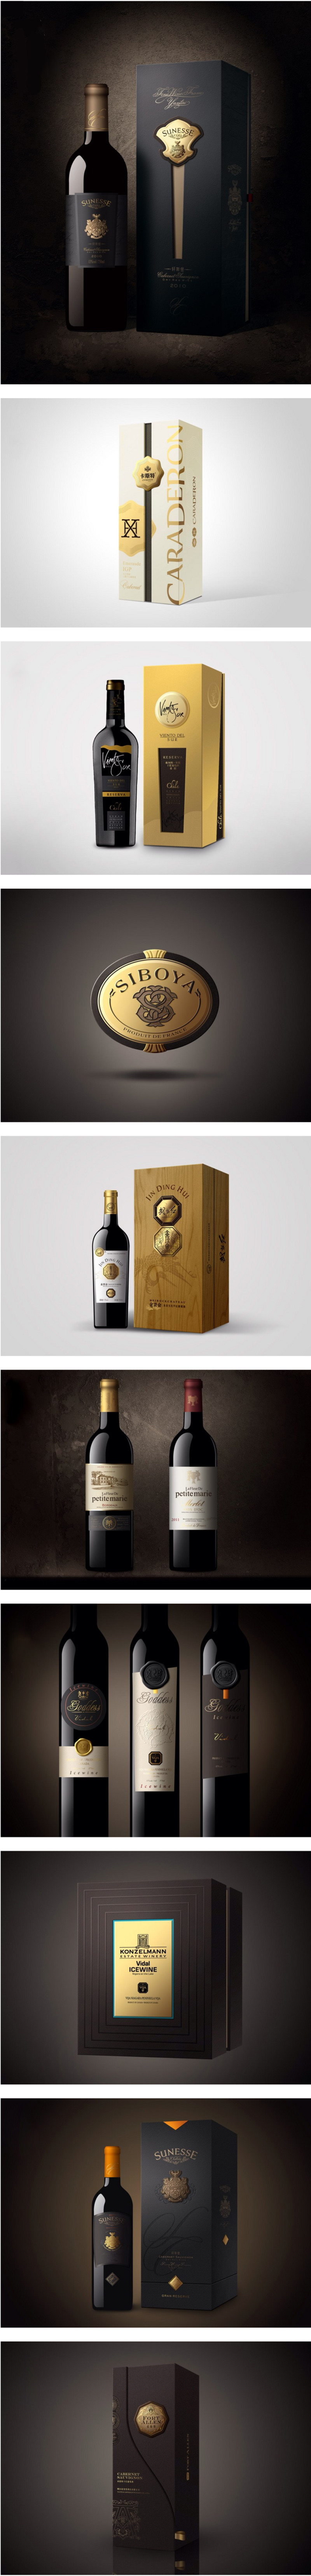 高档红葡萄酒系列包装设计